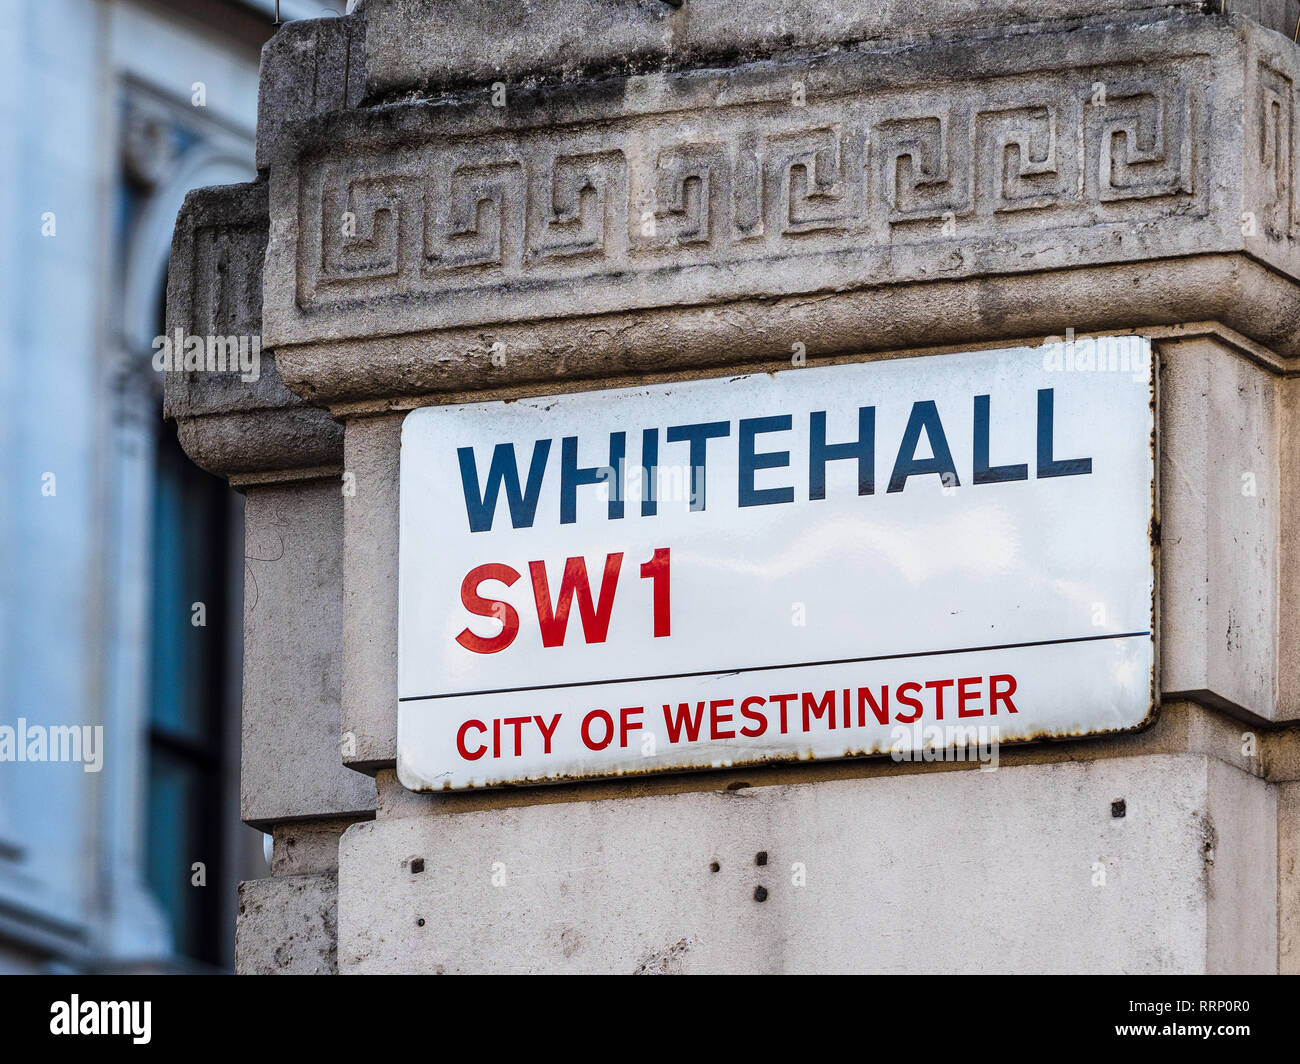 Whitehall SW1 strada segno Londra - Whitehall è al cuore della City of Westminster distretto governativo nel centro di Londra Foto Stock